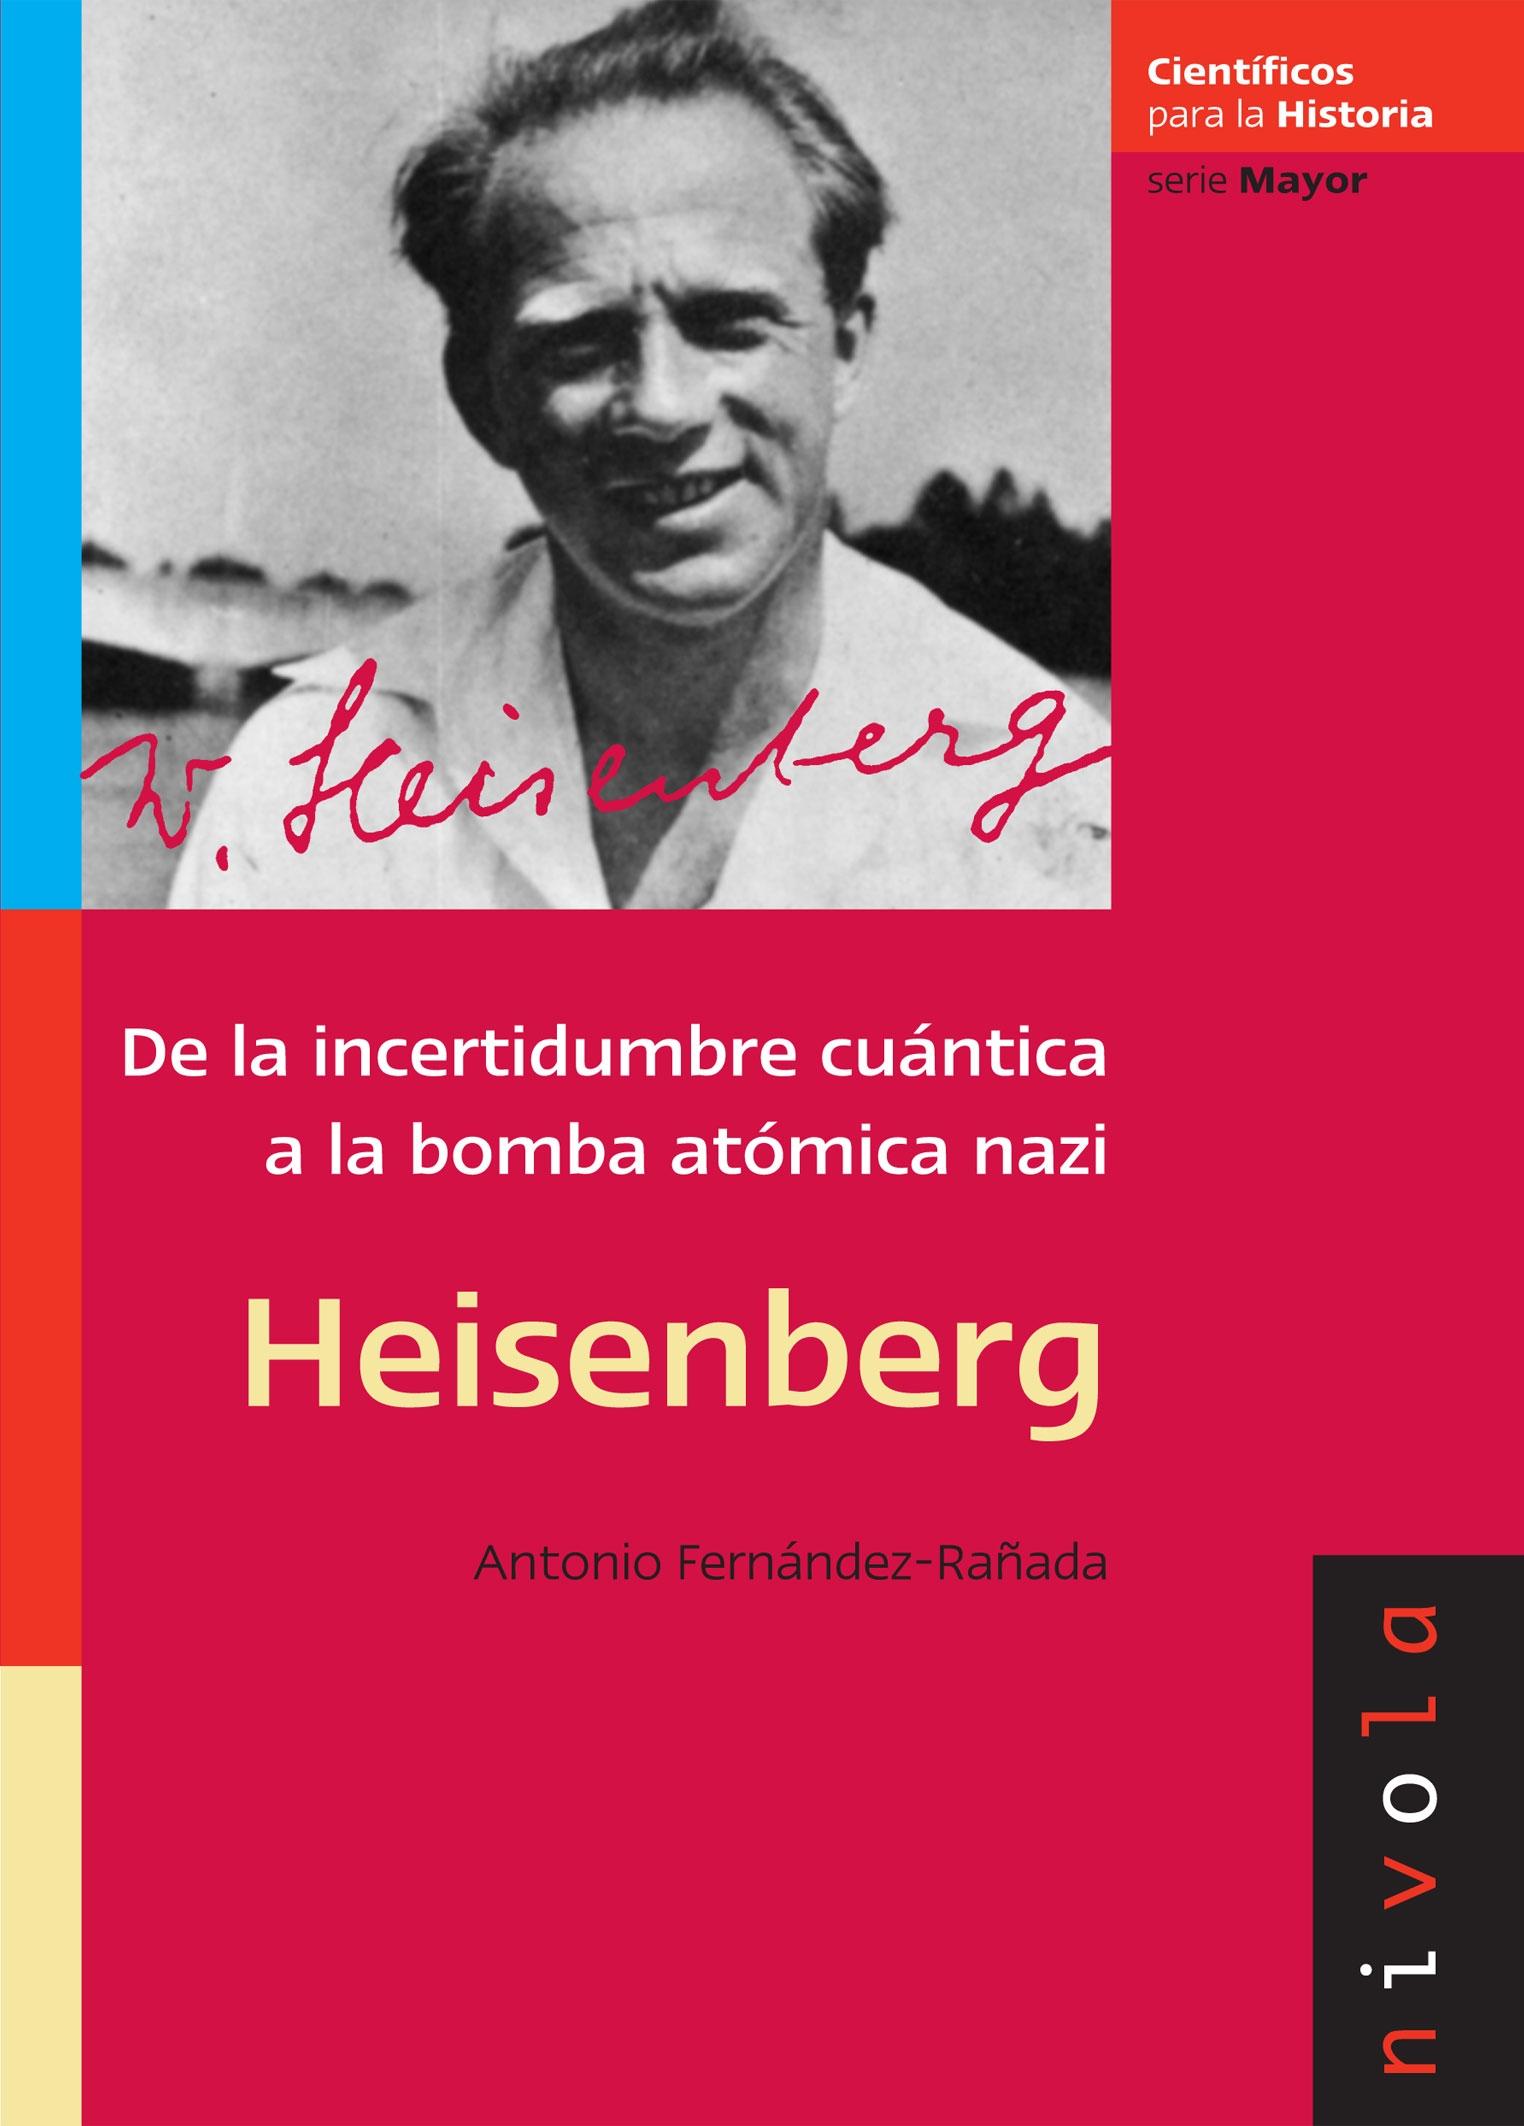 Heisenberg "De la incertidumbre cuántica a la bomba atómica nazi". 